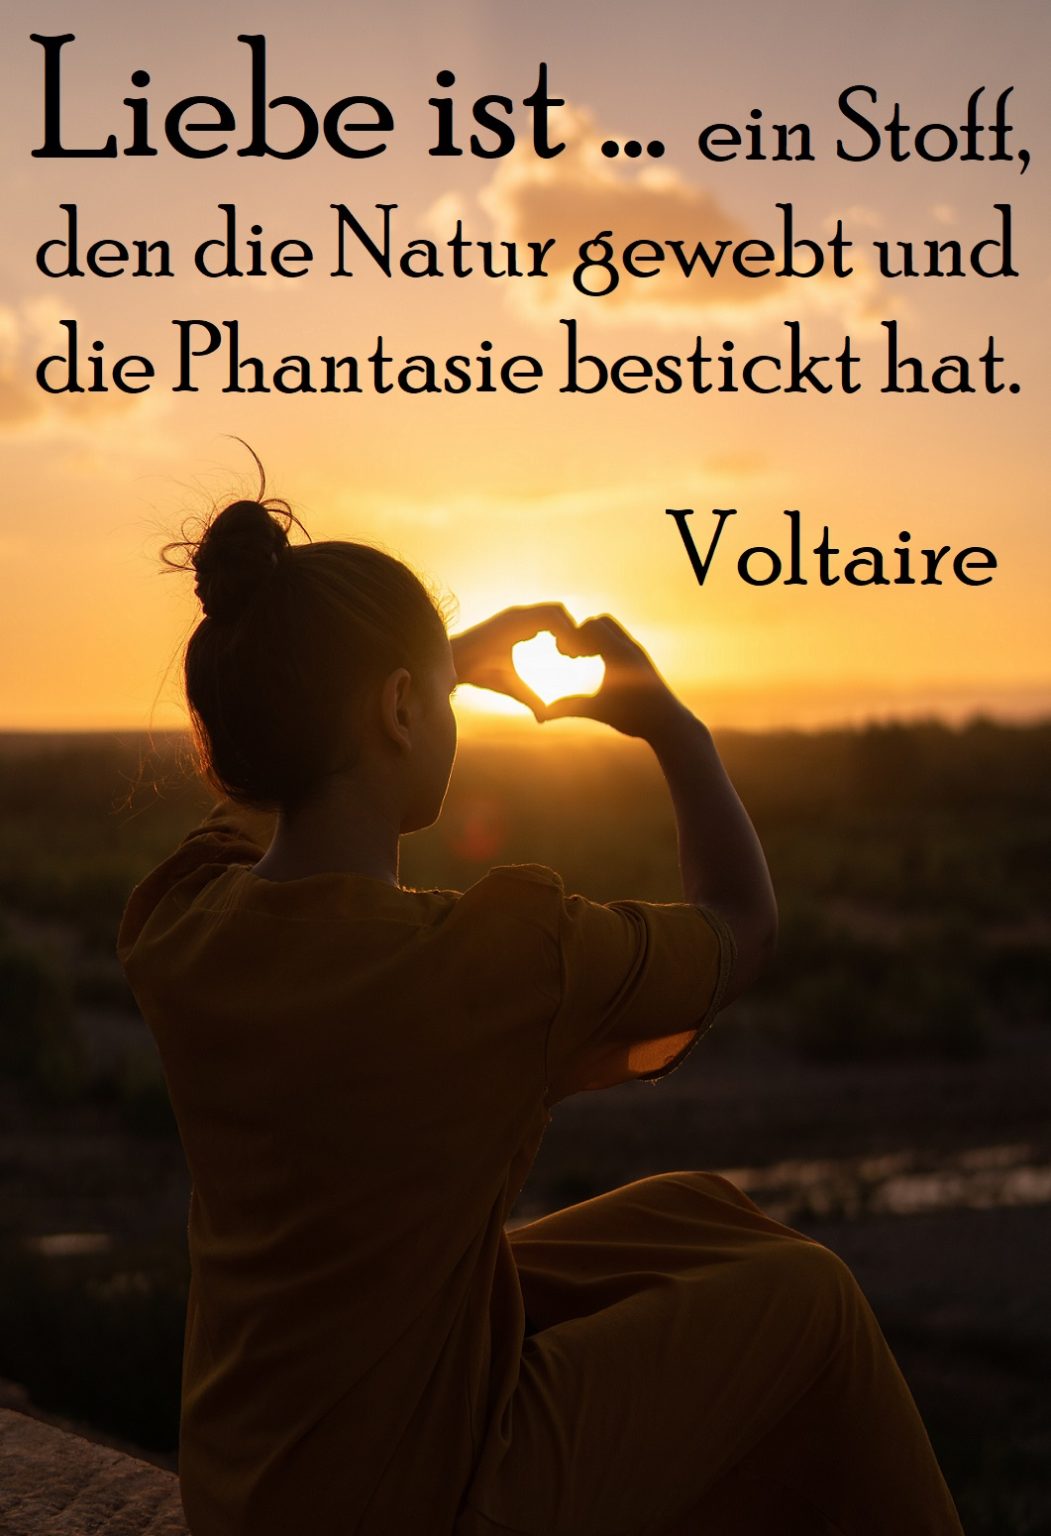 Liebe ist Spruch Nummer 1 - Gutscheinspruch.de